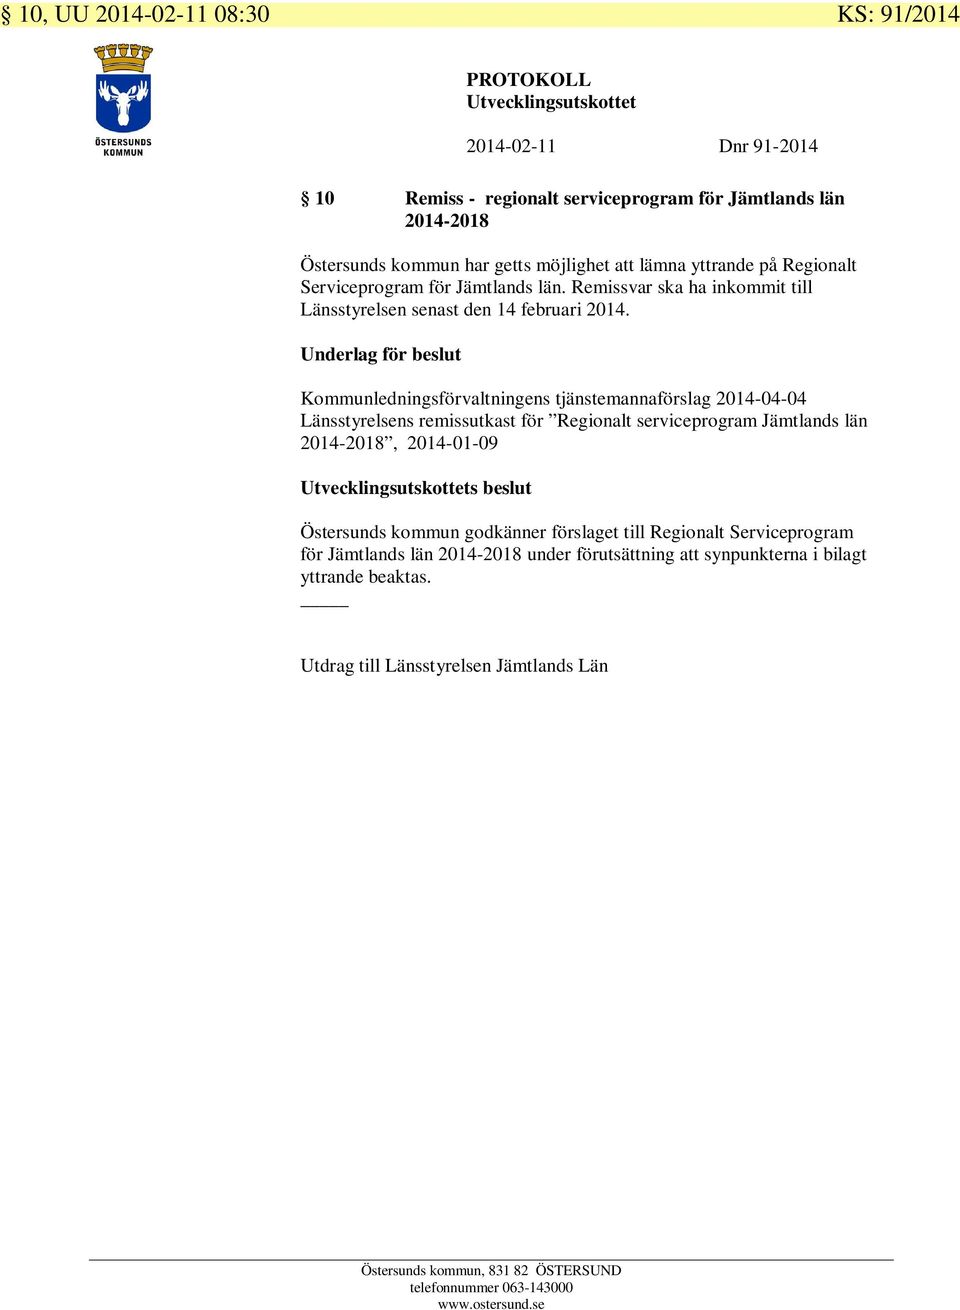 Kommunledningsförvaltningens tjänstemannaförslag 2014-04-04 Länsstyrelsens remissutkast för Regionalt serviceprogram Jämtlands län 2014-2018, 2014-01-09 s beslut